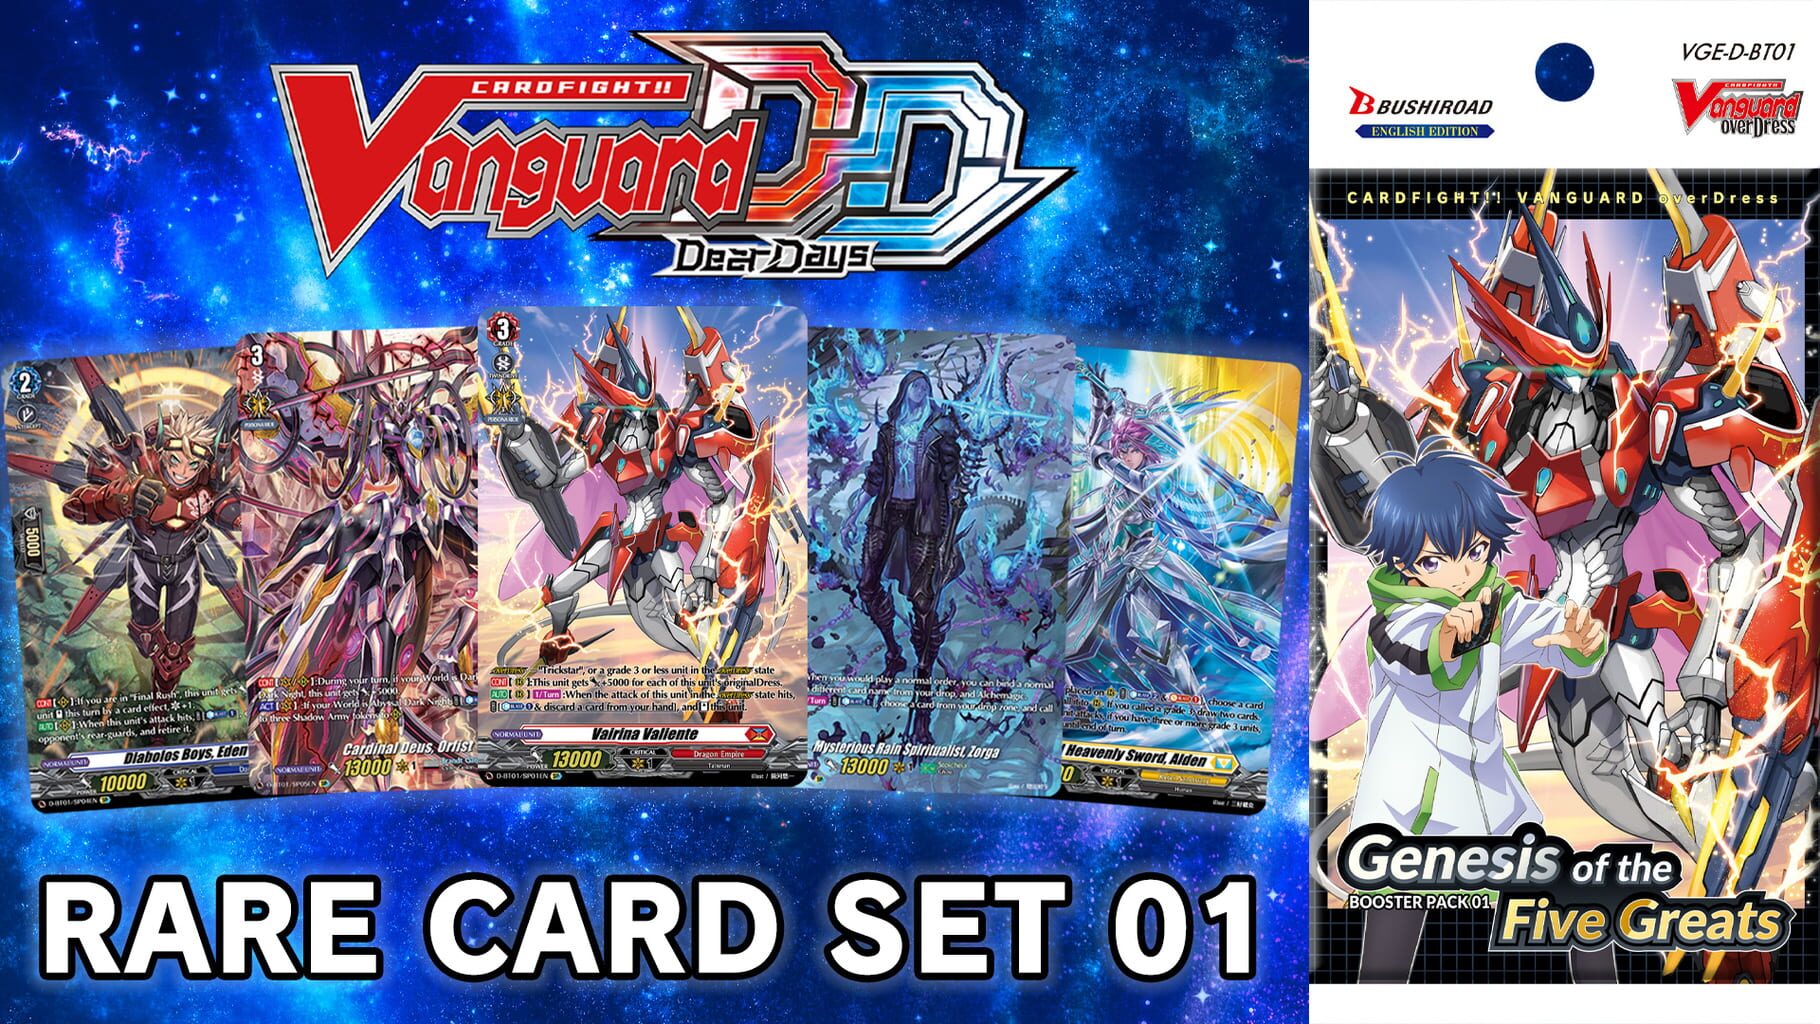 Cardfight!! Vanguard: Dear Days - Rare Card Set 01 D-BT01: Genesis of the Five Greats artwork